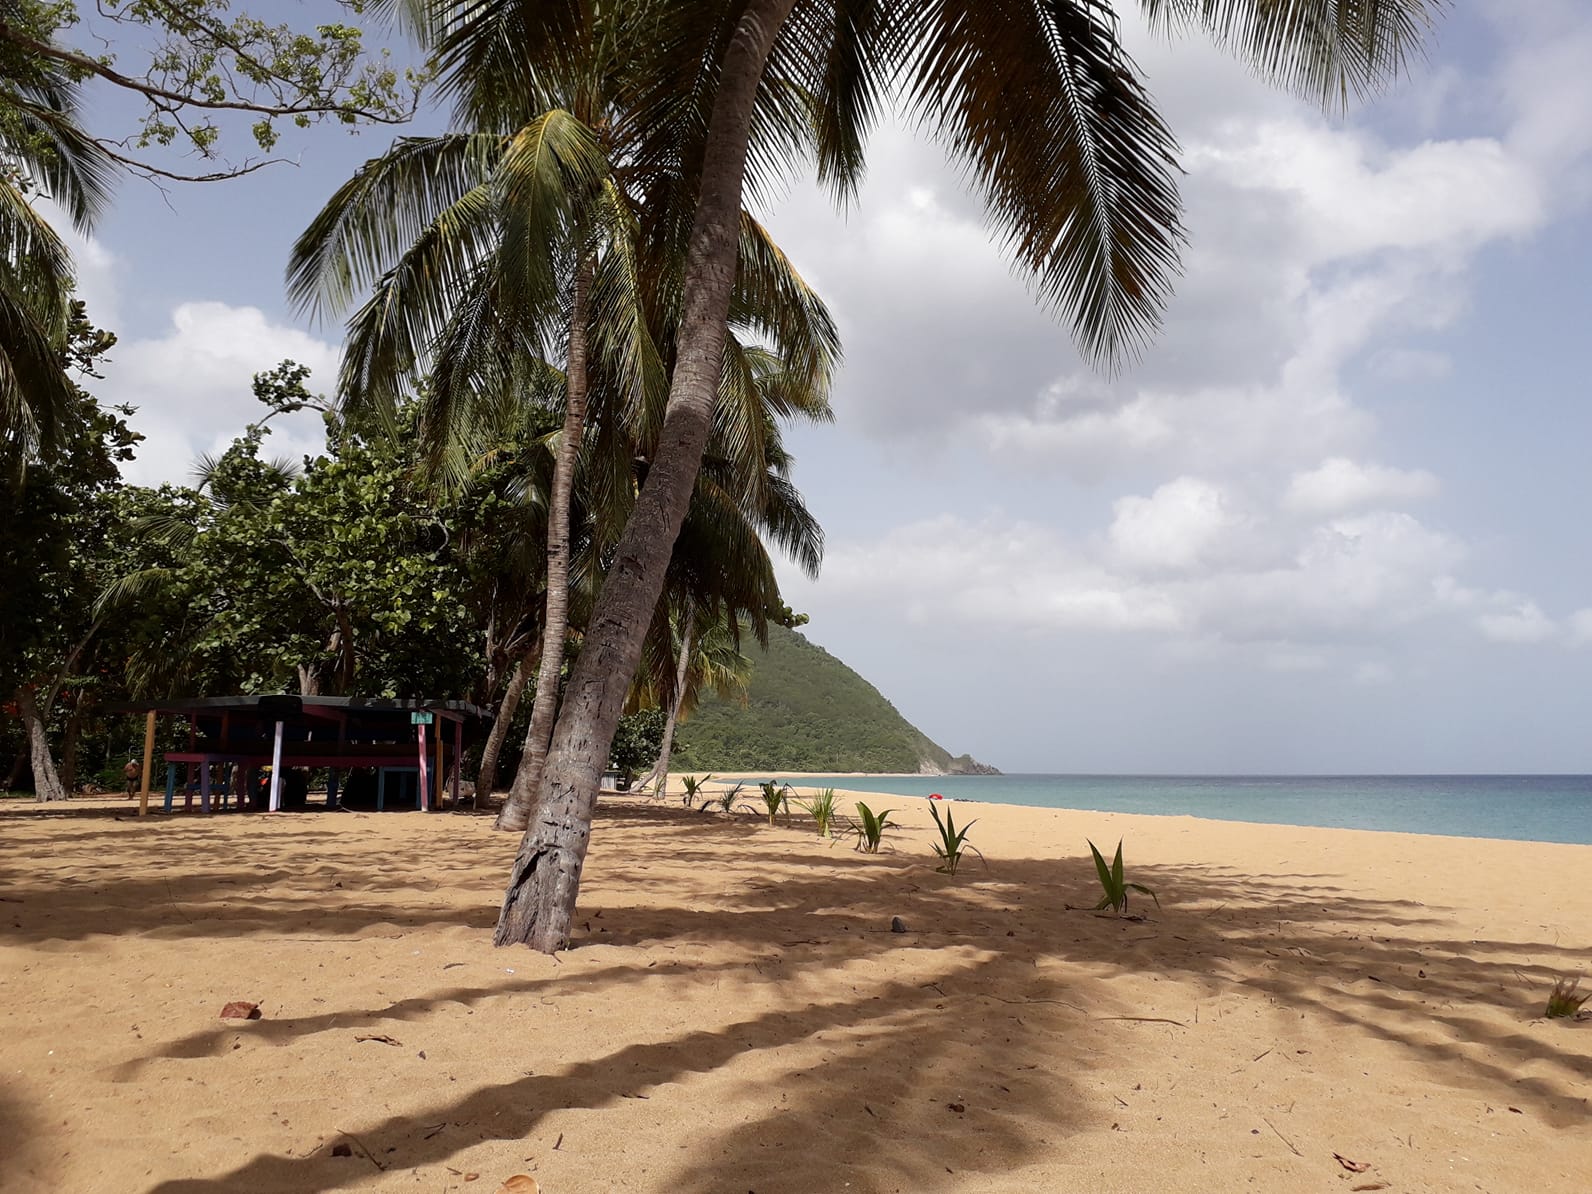 Sans intervention humaine pas de plages propre même en Guadeloupe !